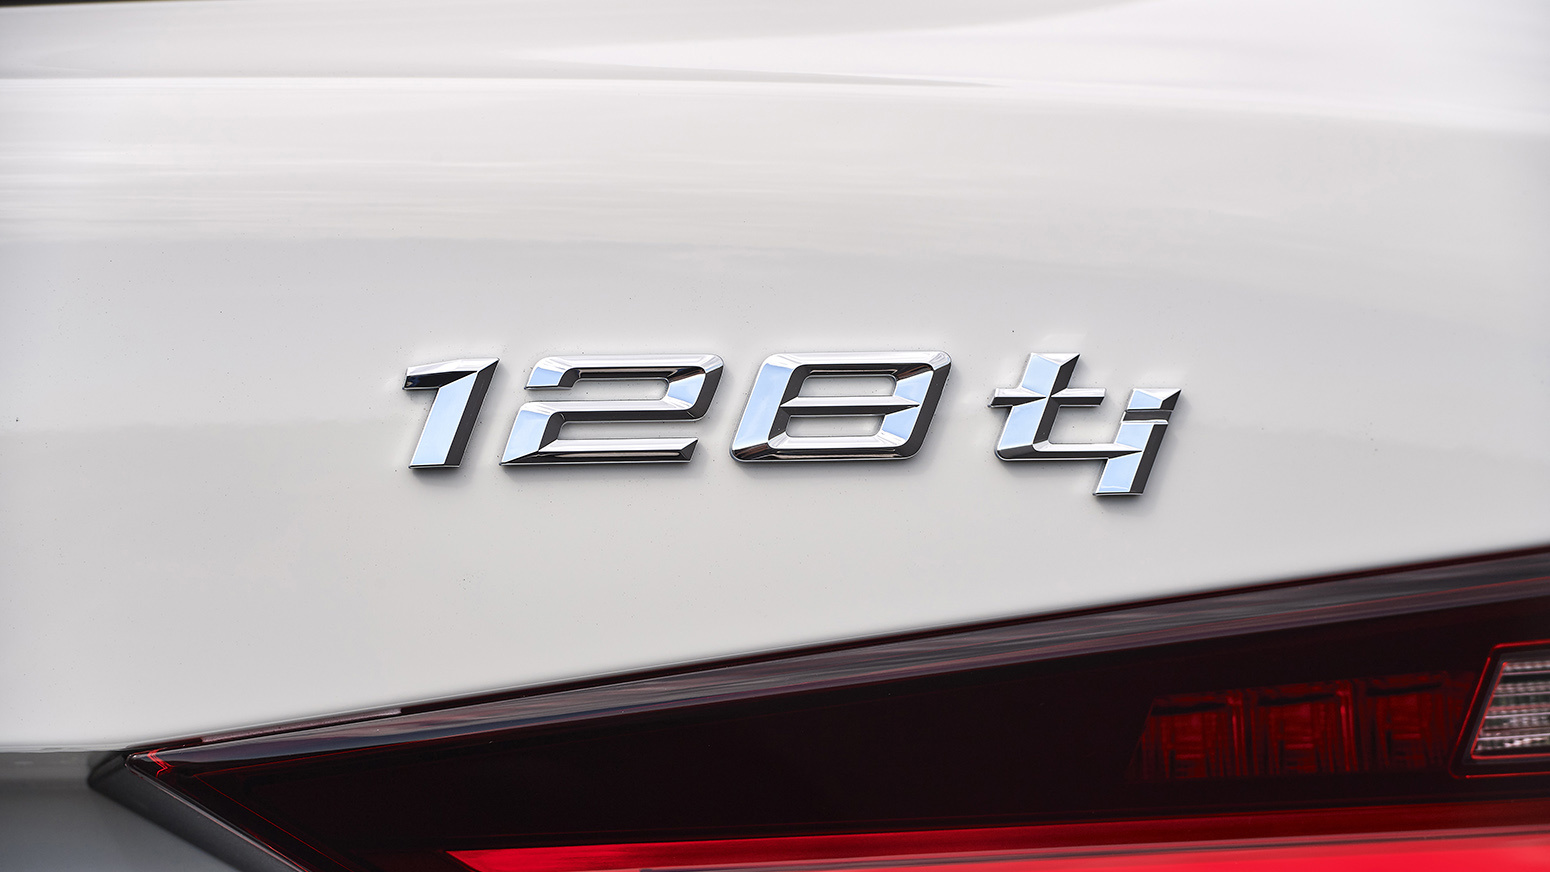 Modelnavn på bagenden af BMW 128Ti